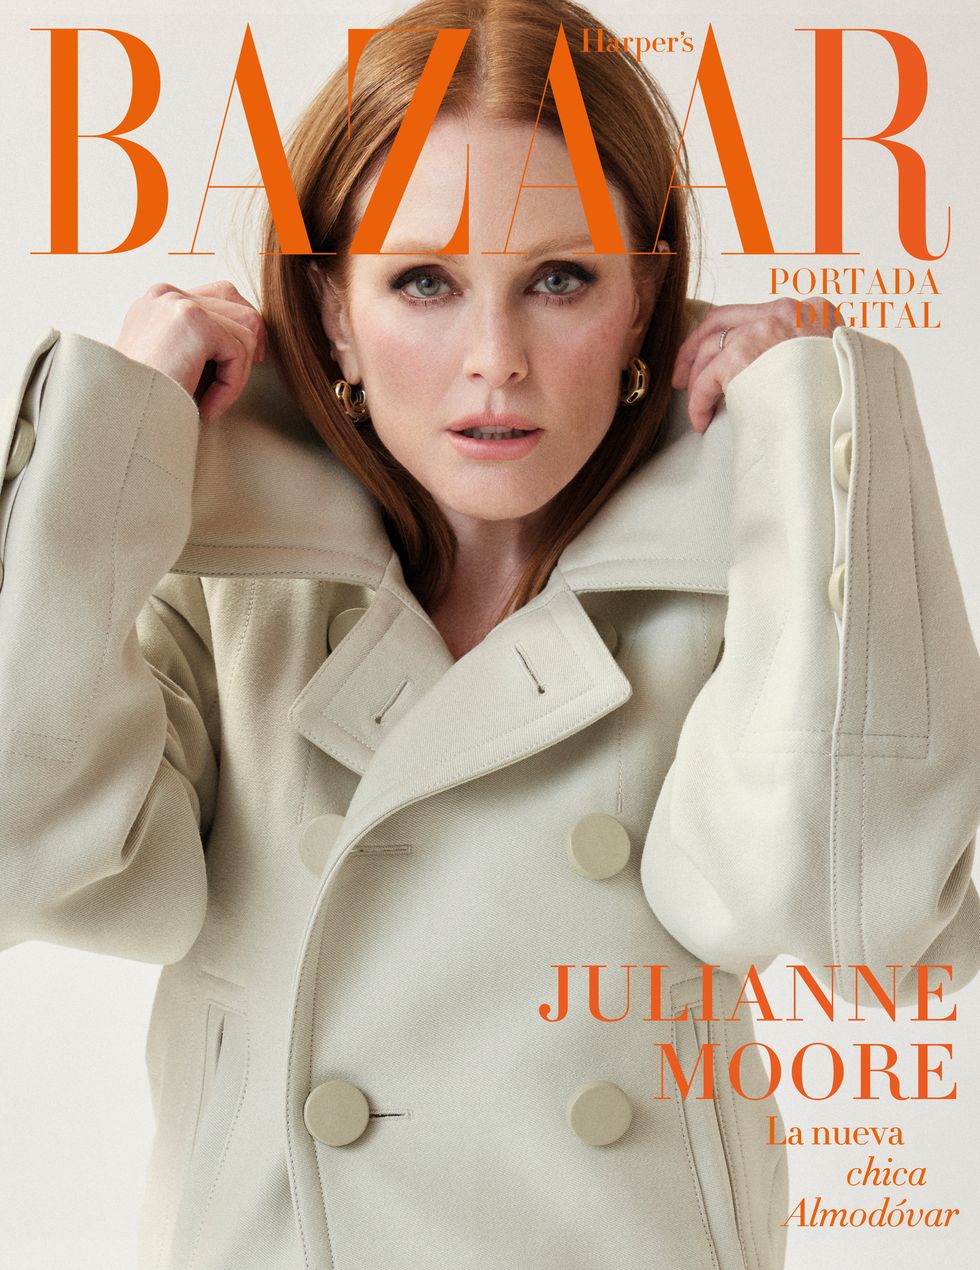 juliane moore, portada digital de harper's bazaar